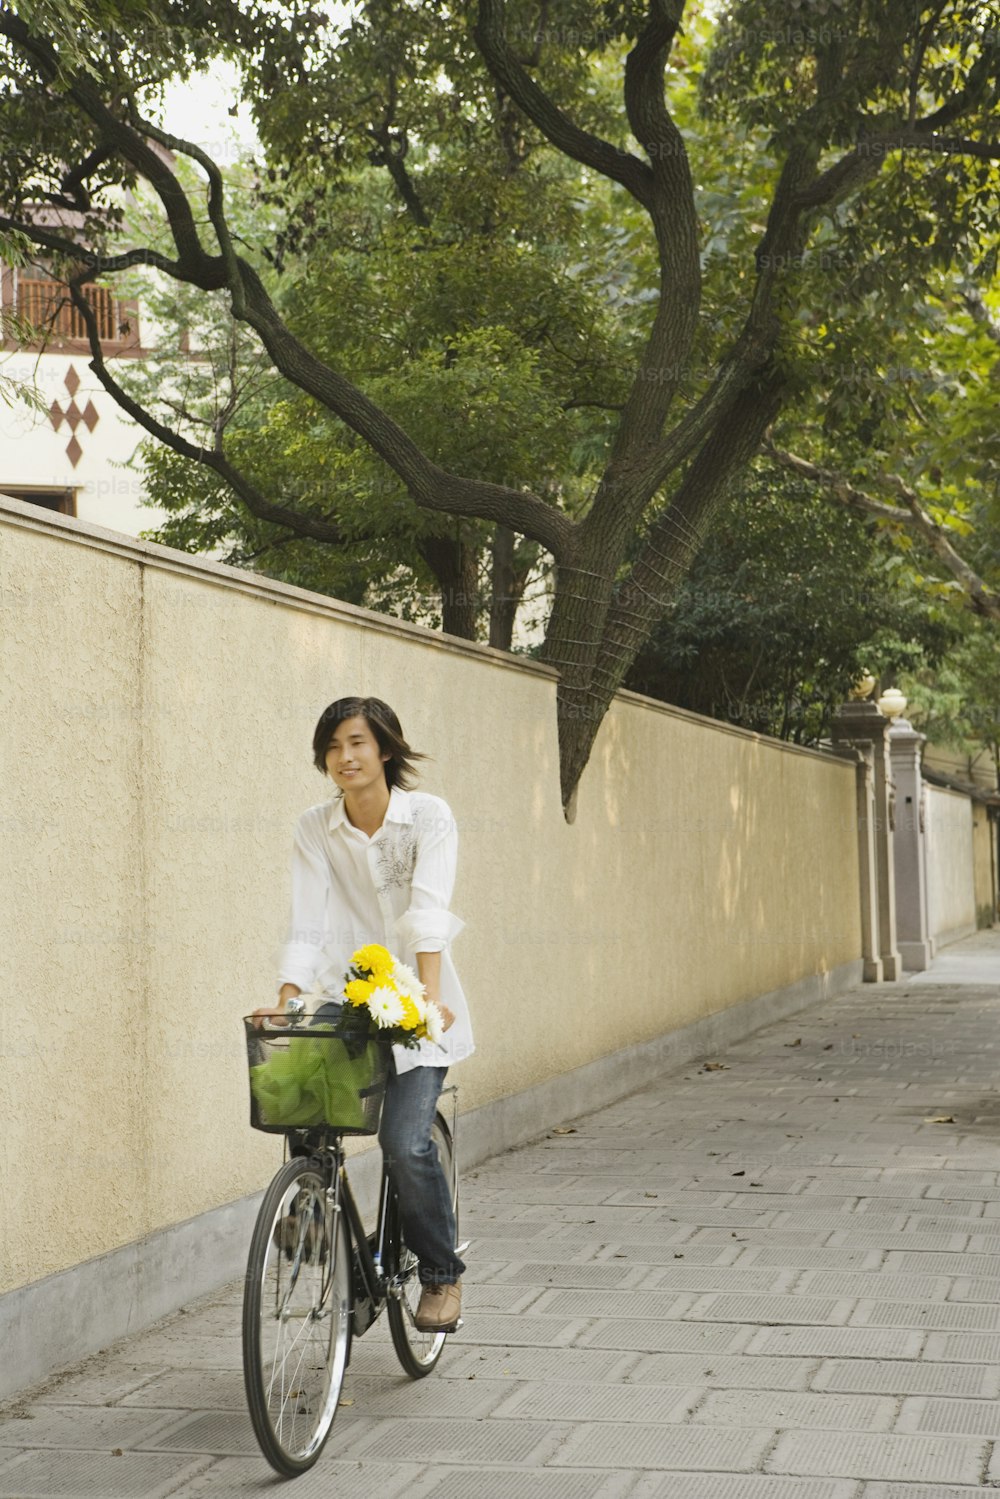 Una donna che guida una bicicletta lungo un marciapiede